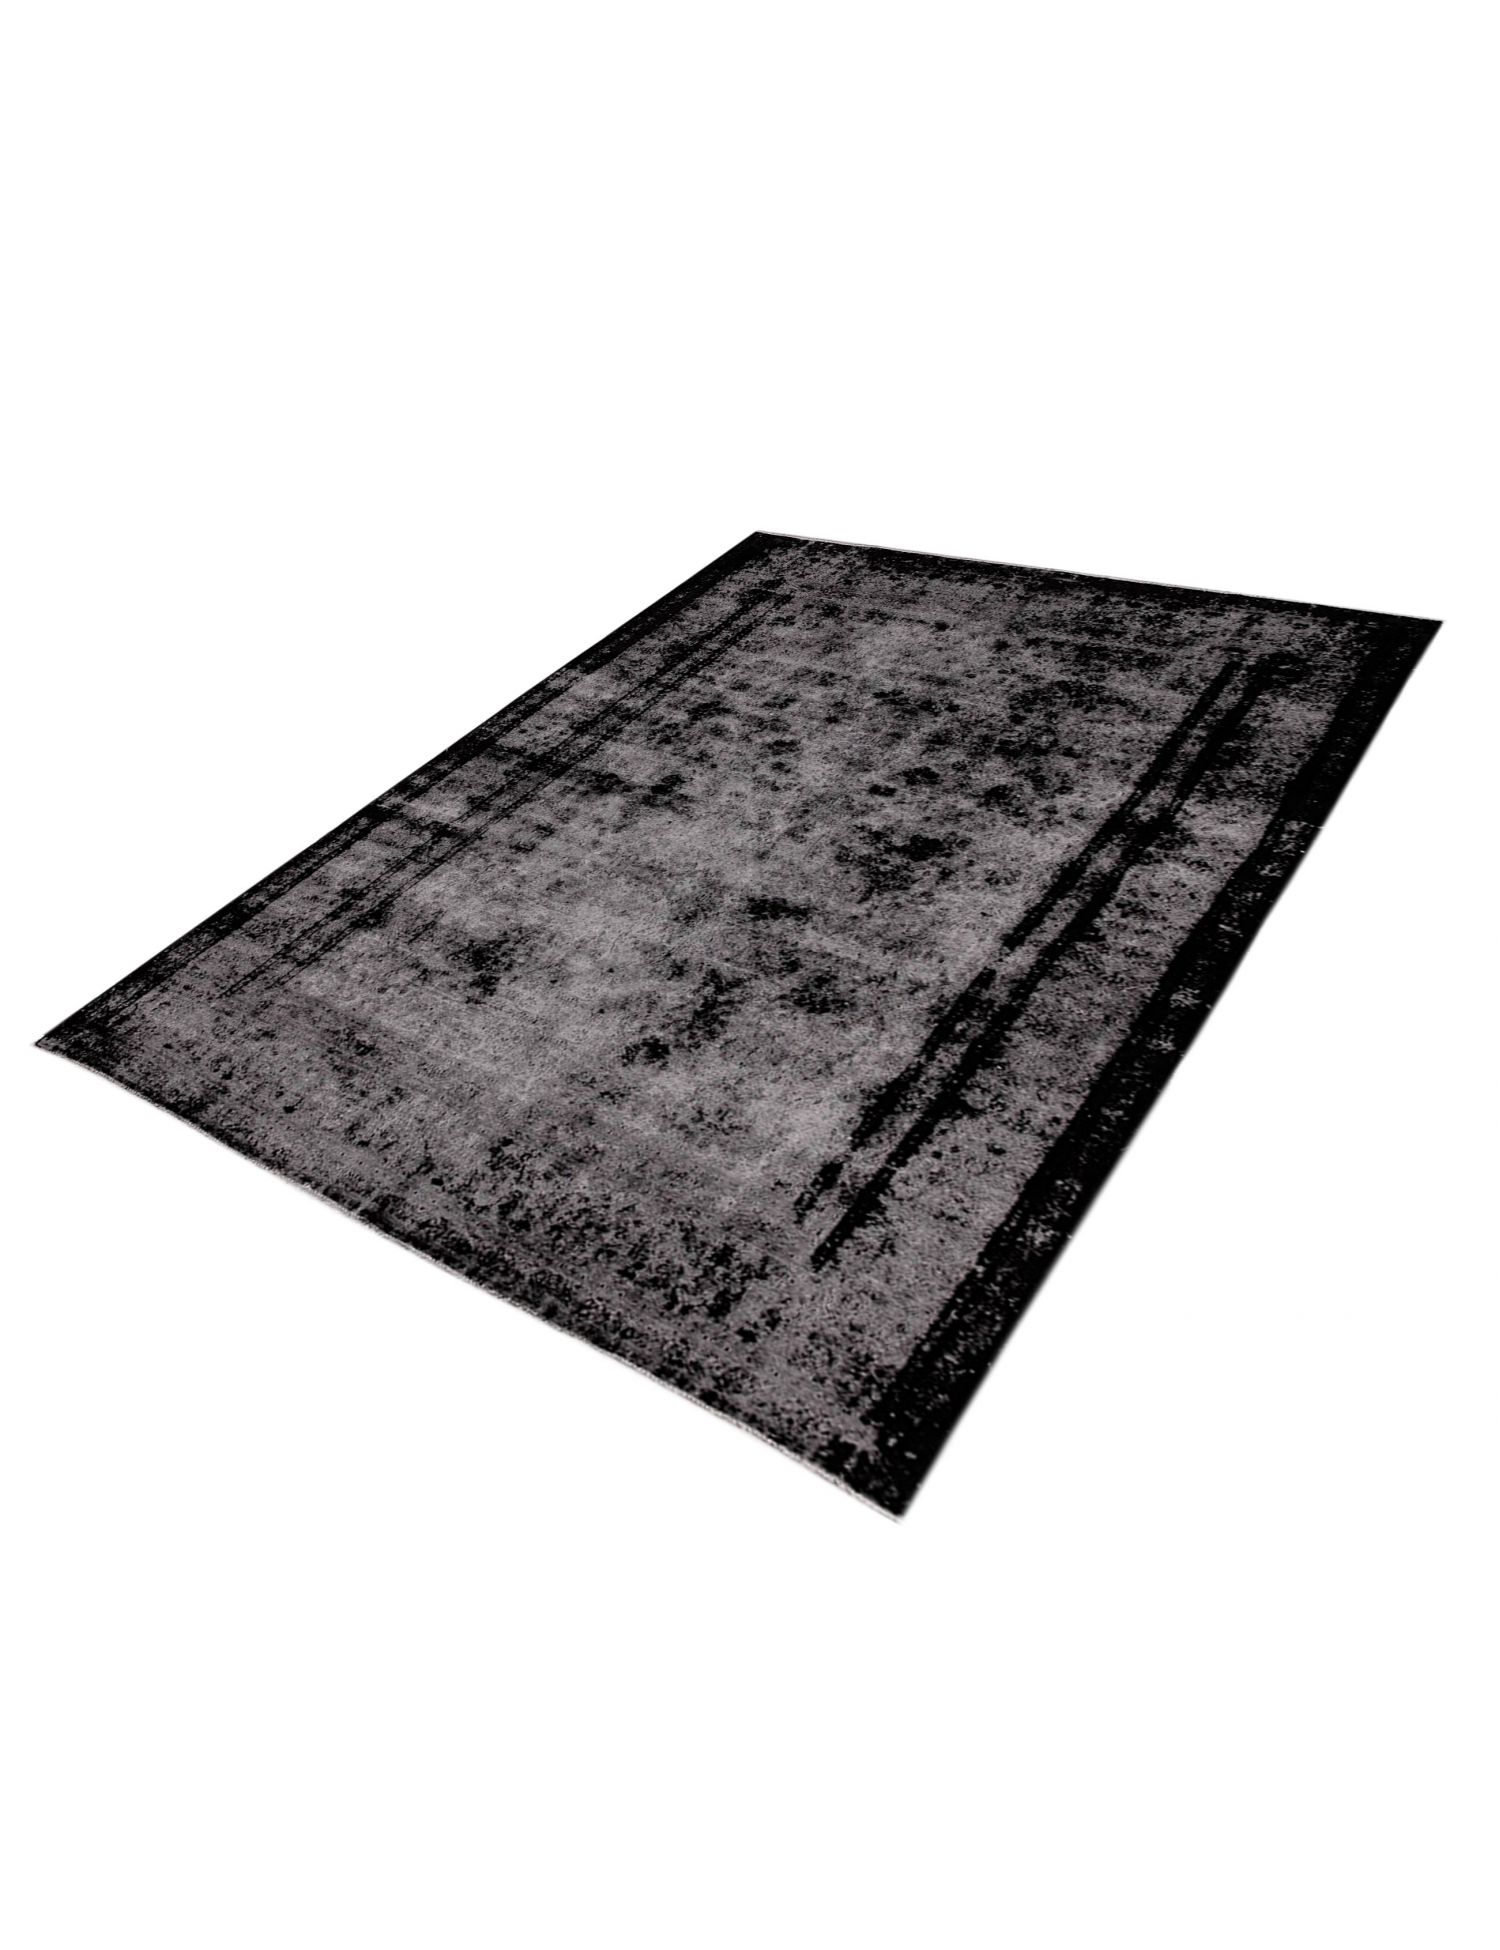 Persian Vintage Carpet  black <br/>310 x 210 cm